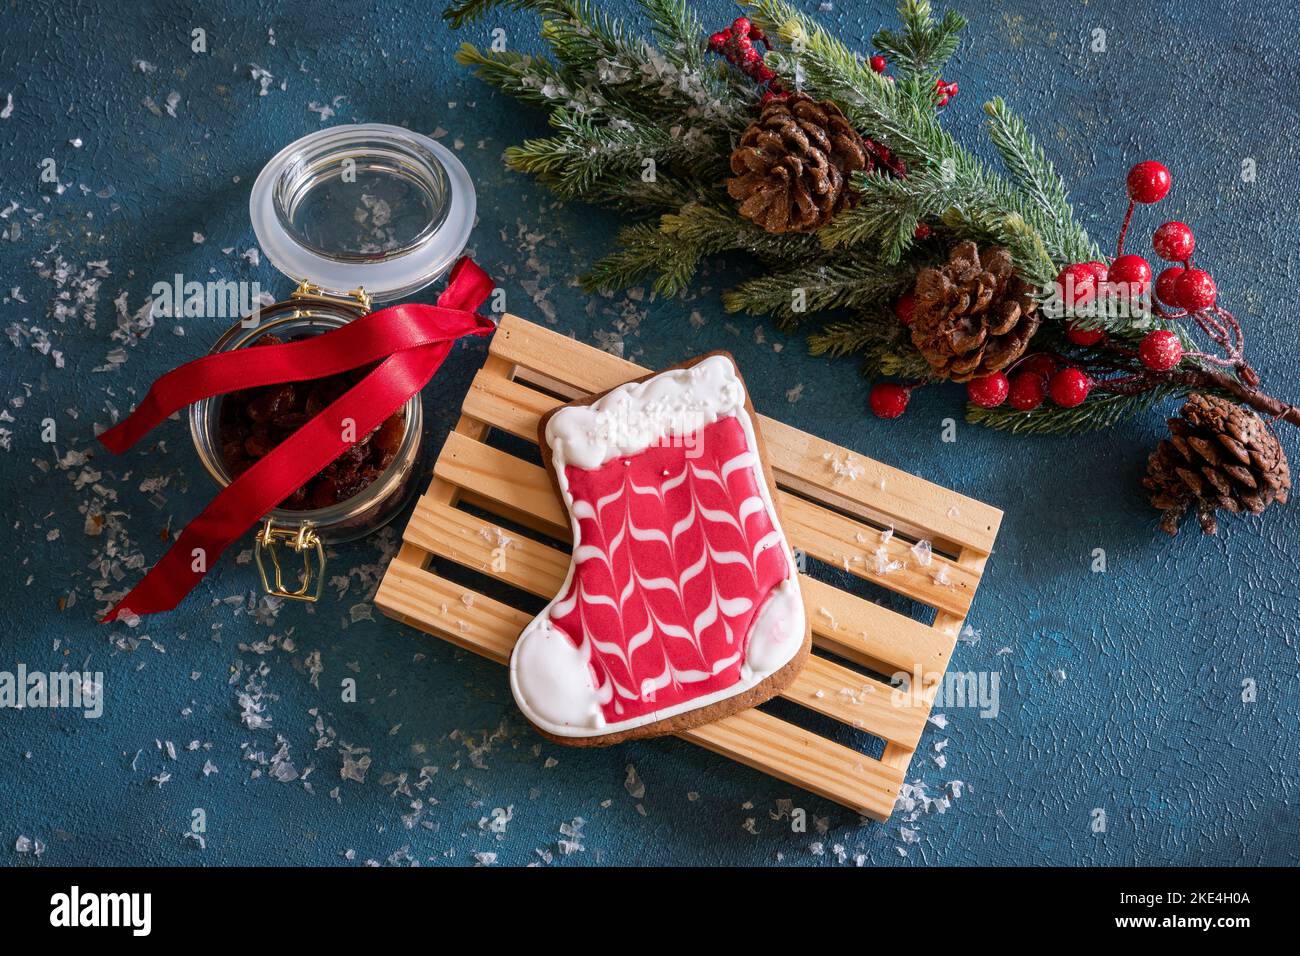 Weihnachts-Lebkuchen liegt auf einem Holzbrett. Auf dem Tisch liegt ein Fichtenzweig mit Zapfen und Beeren, daneben ein Glas Rosinen und Schnee. Stockfoto